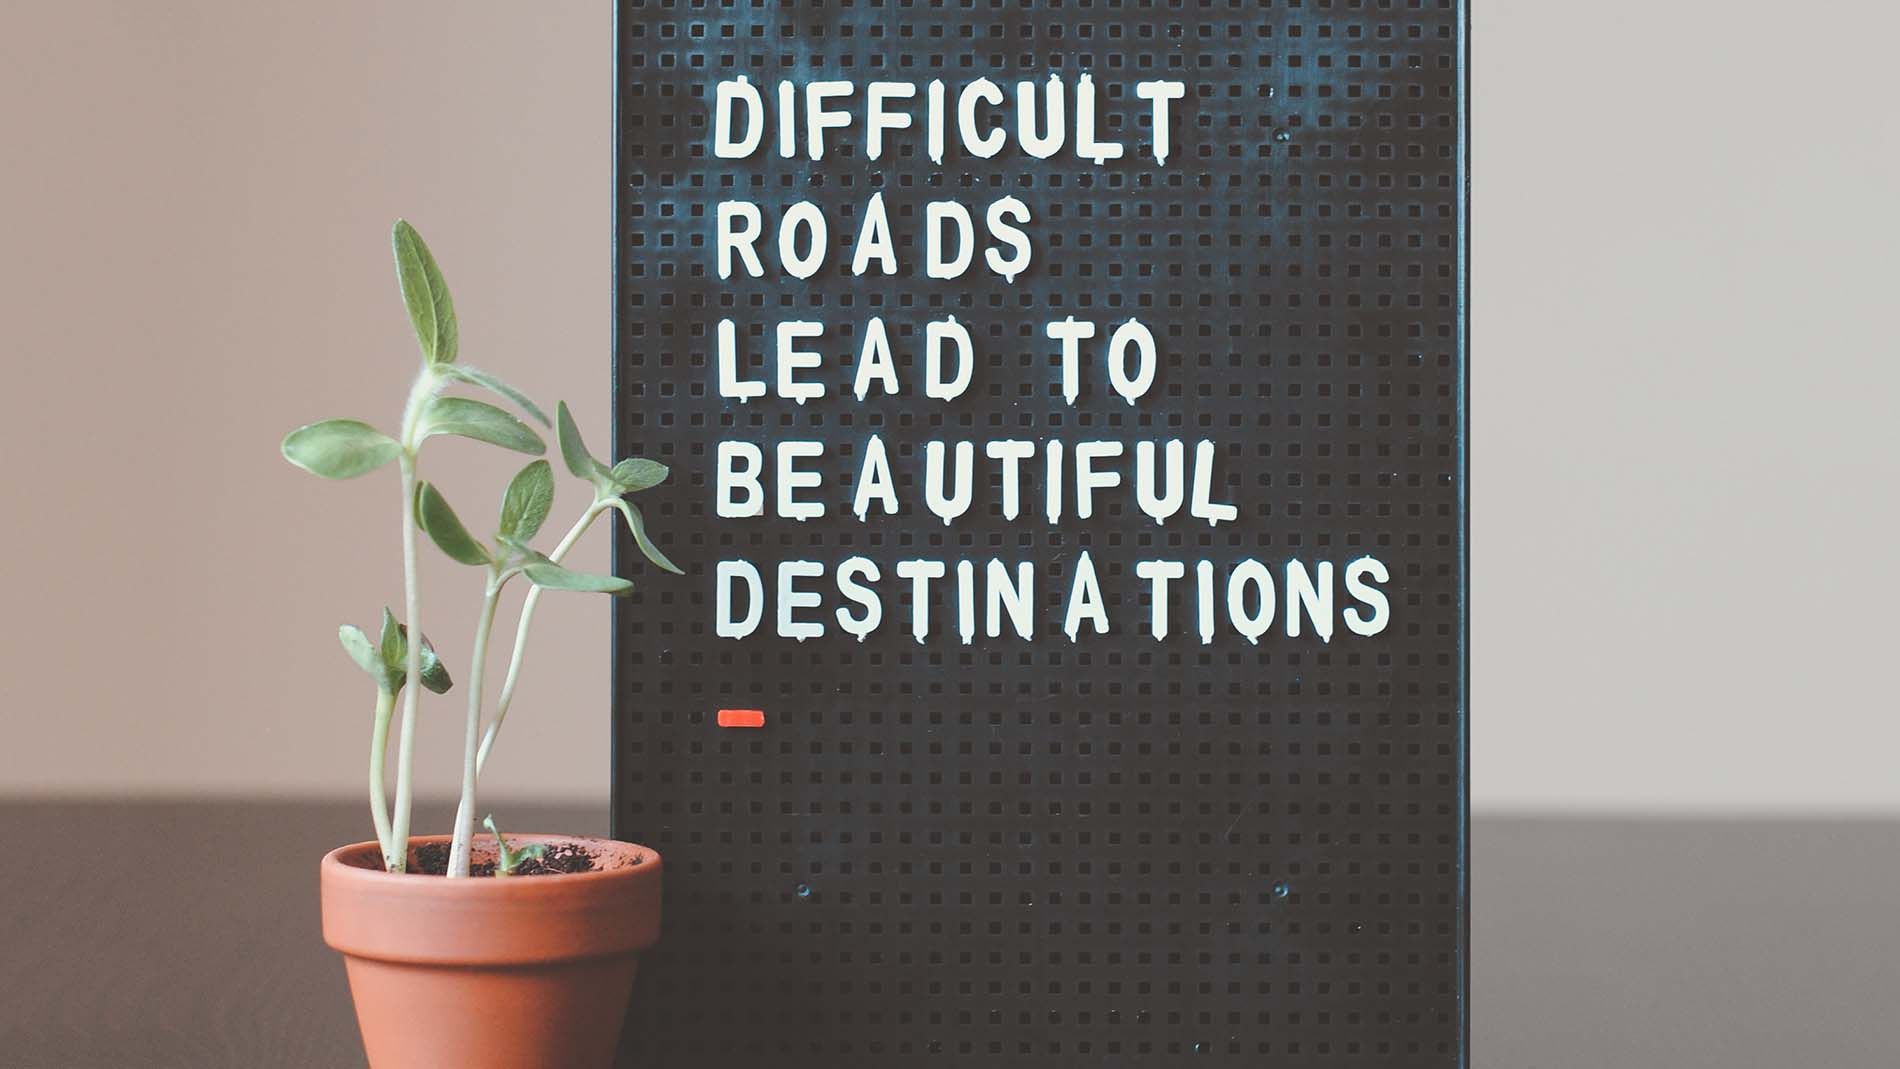 tavleboard om viden hvor der står "Difficult roads leads to beautiful destinations" har en grøn plante ved venstre side